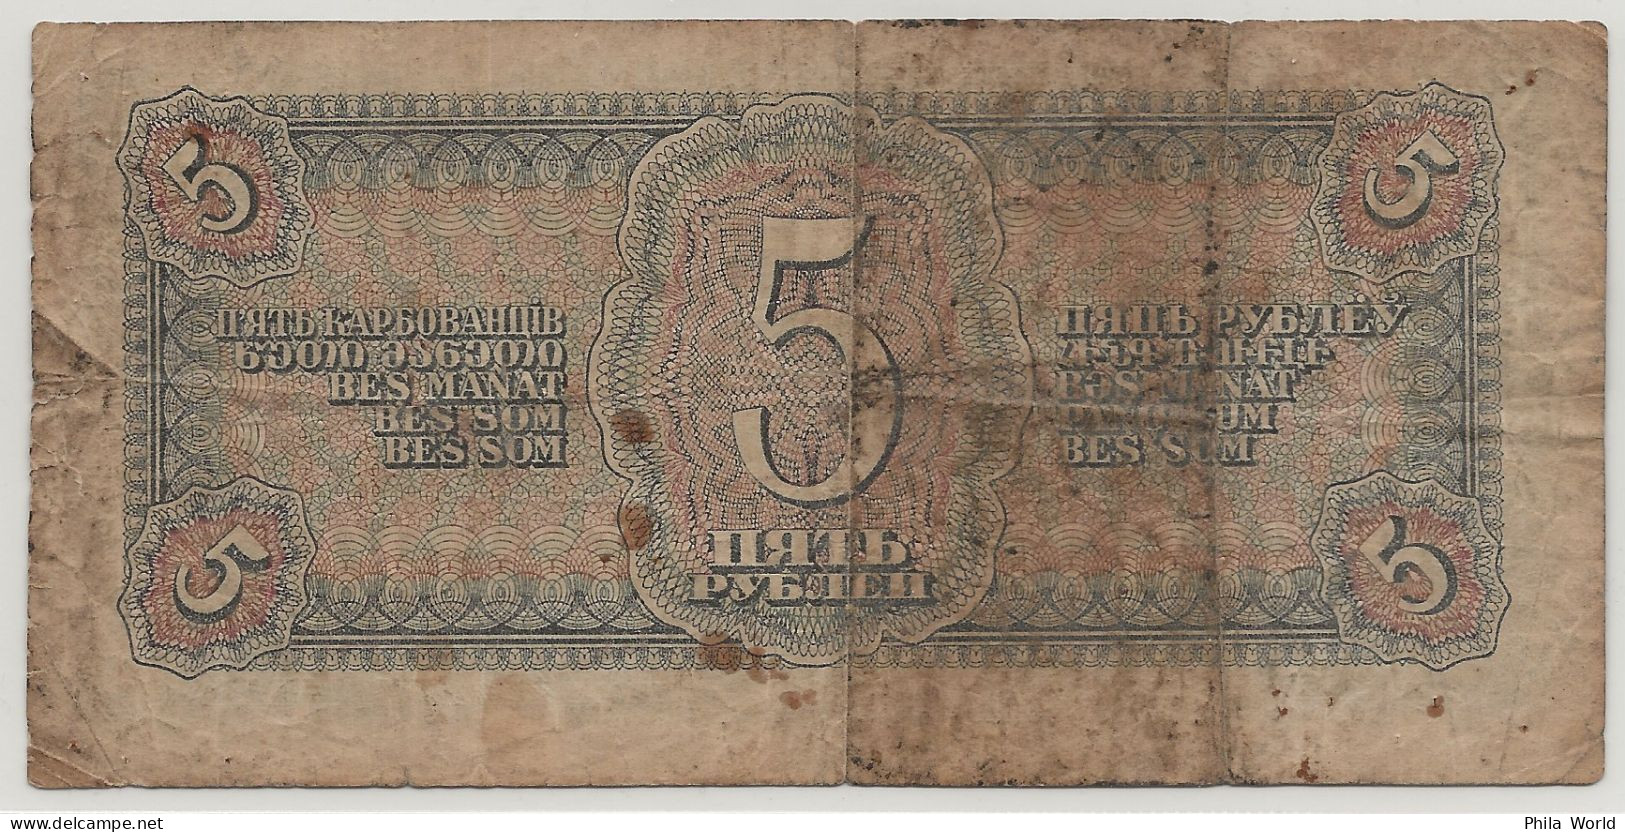 URSS CCCP Russie 1938 Billet Banque 5 Roubles Pilote Avion - Rusland